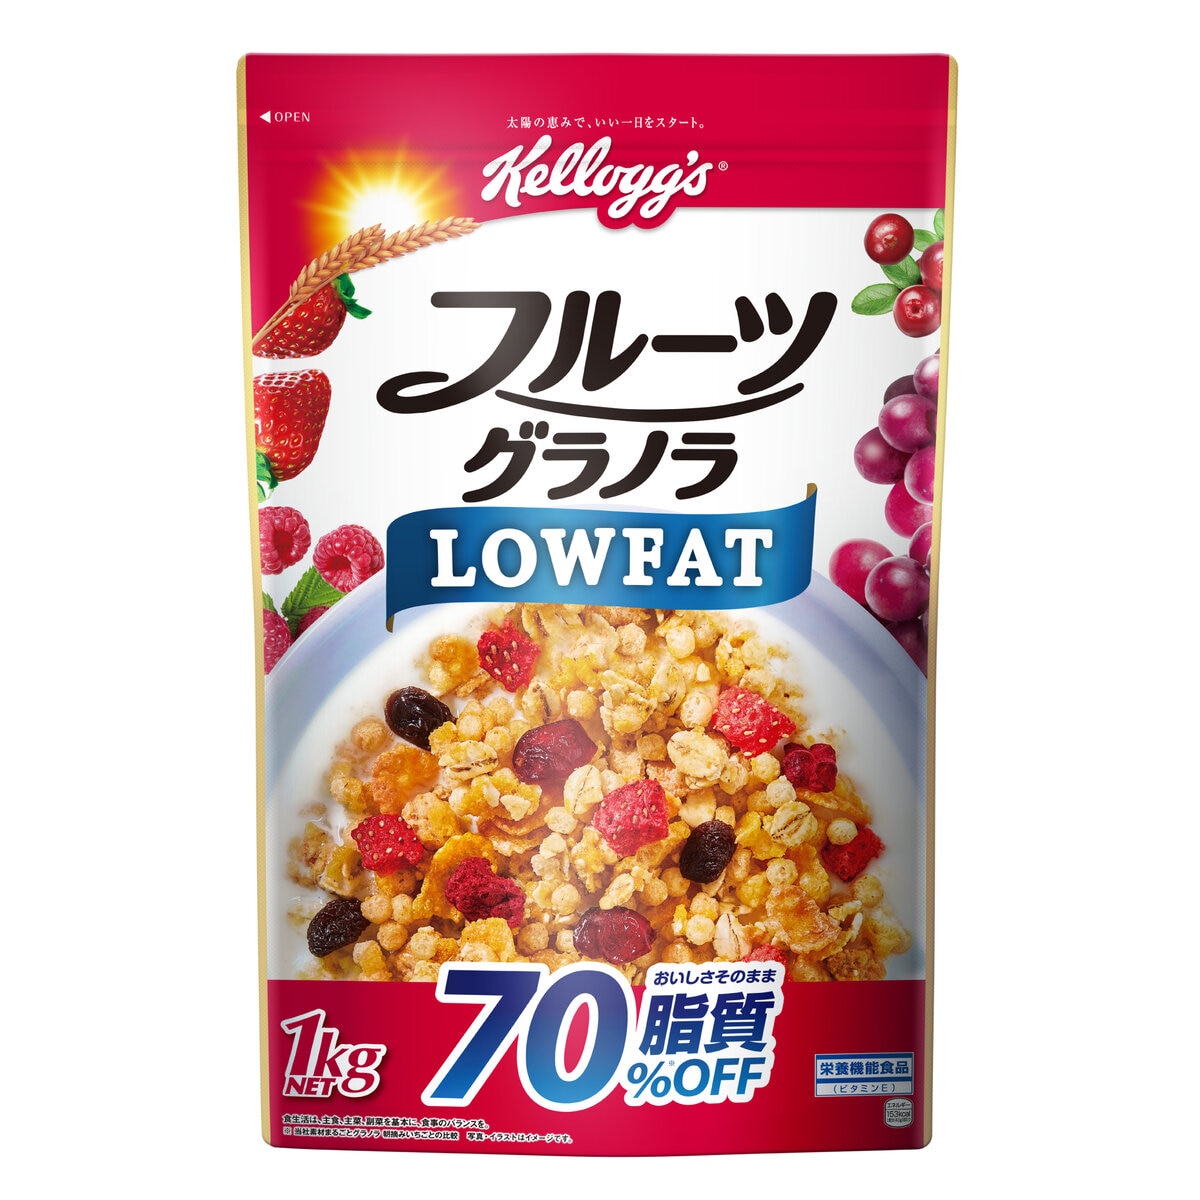 Japan　1kg　フルーツグラノラローファット　ケロッグ　Costco